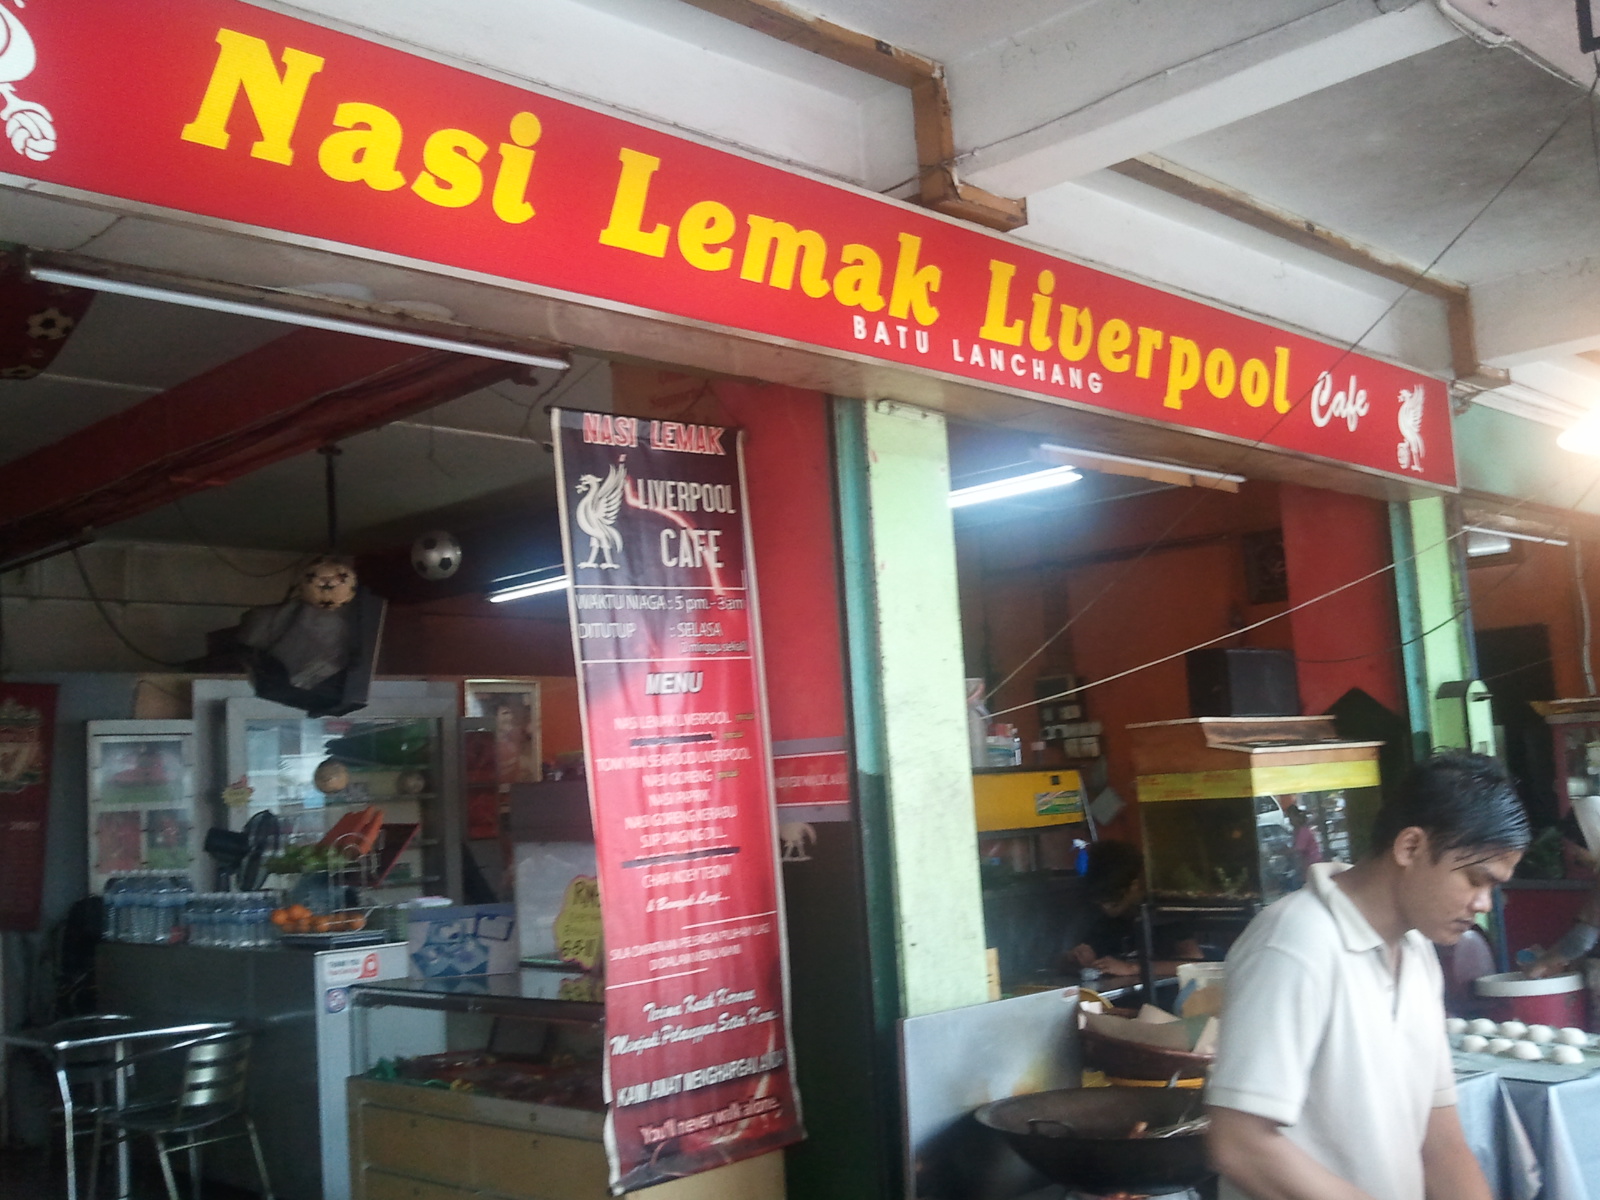 Tasty Or Not?: Nasi Lemak LIVERPOOL @ Batu Lanchang, Penang!!! Another